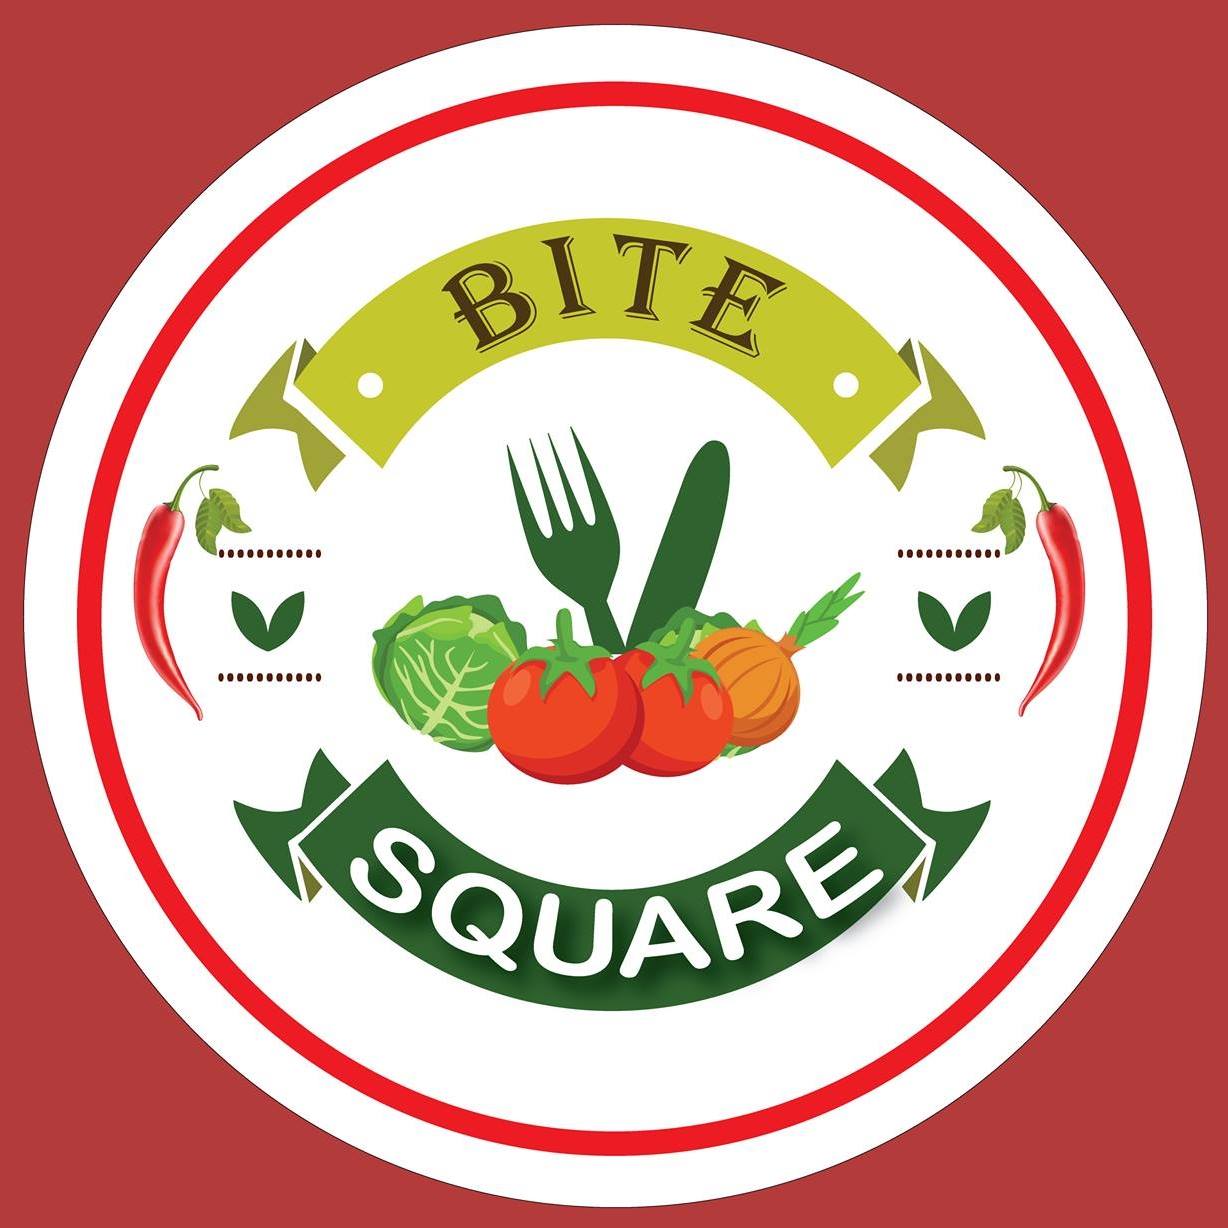 Bite Square